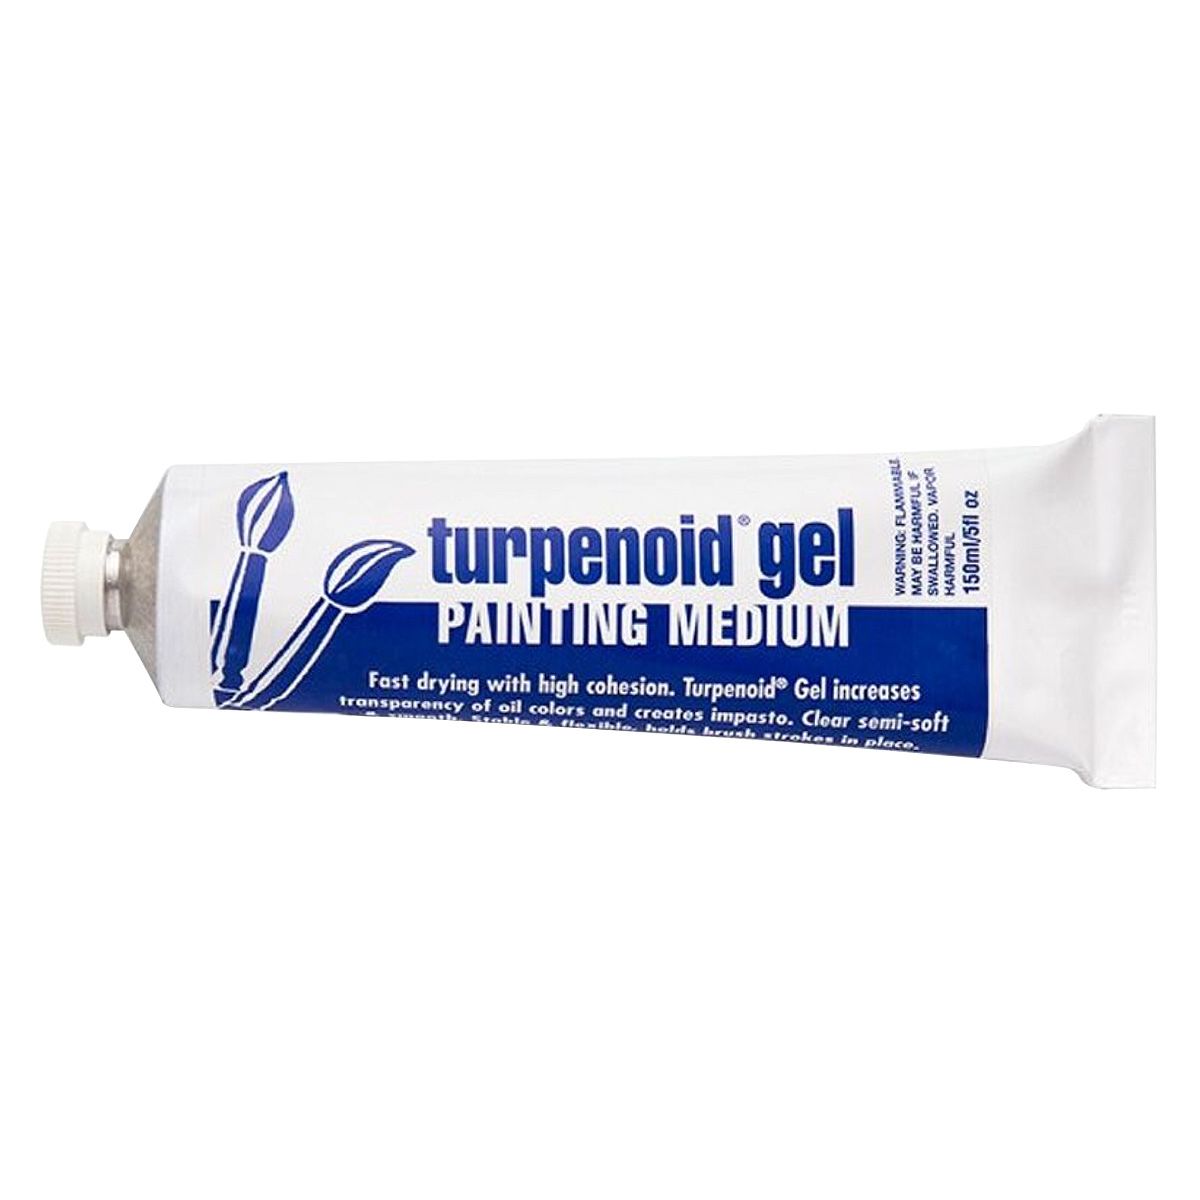 Turpenoid Gel Medium, 150 ml Tube + FREE 4oz. TURPENOID